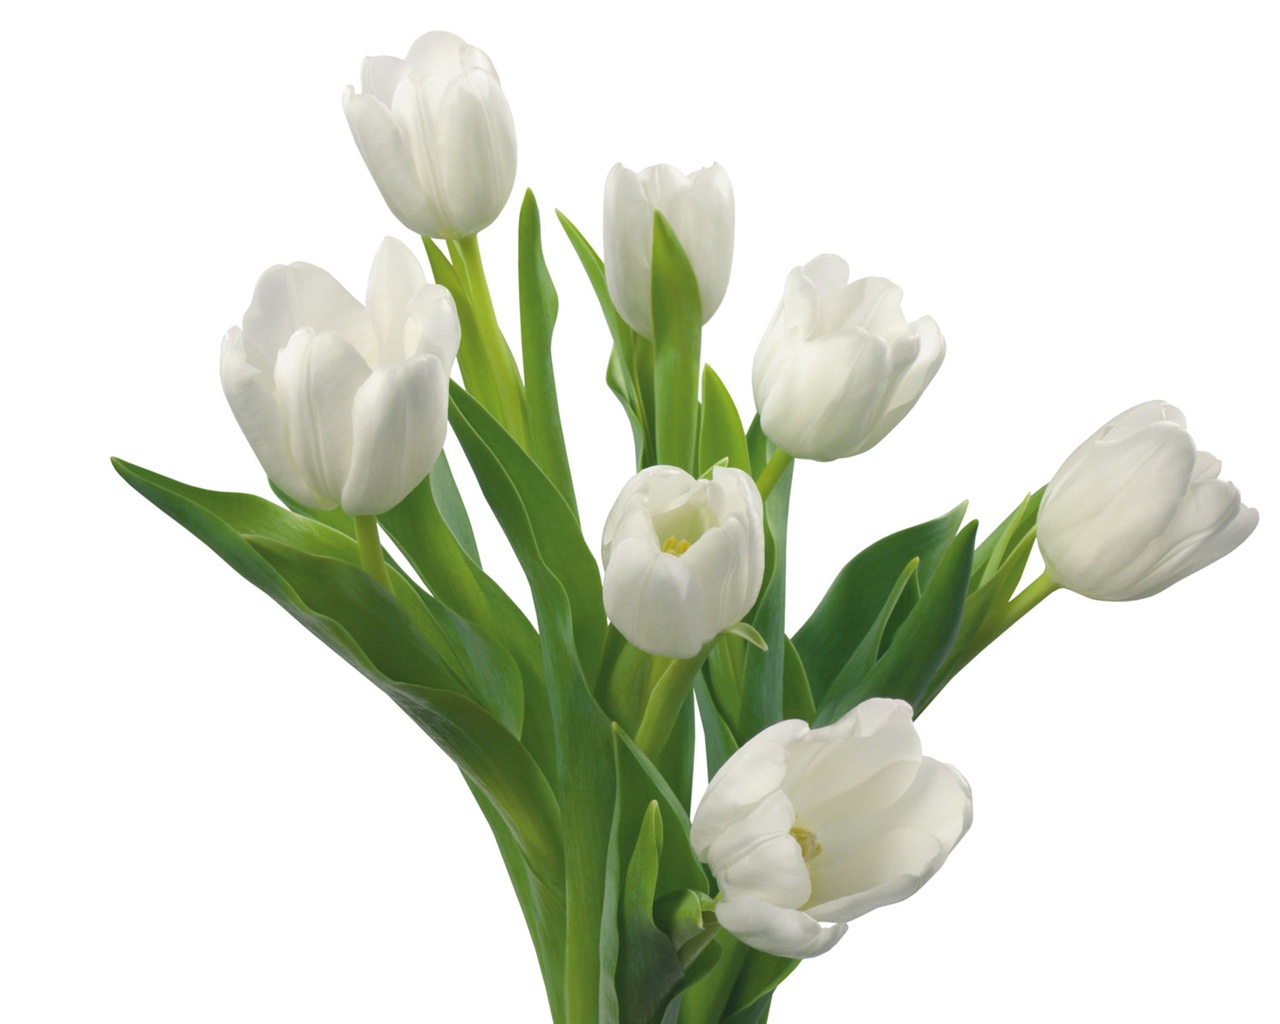 눈같이 흰 꽃 벽지 #11 - 1280x1024